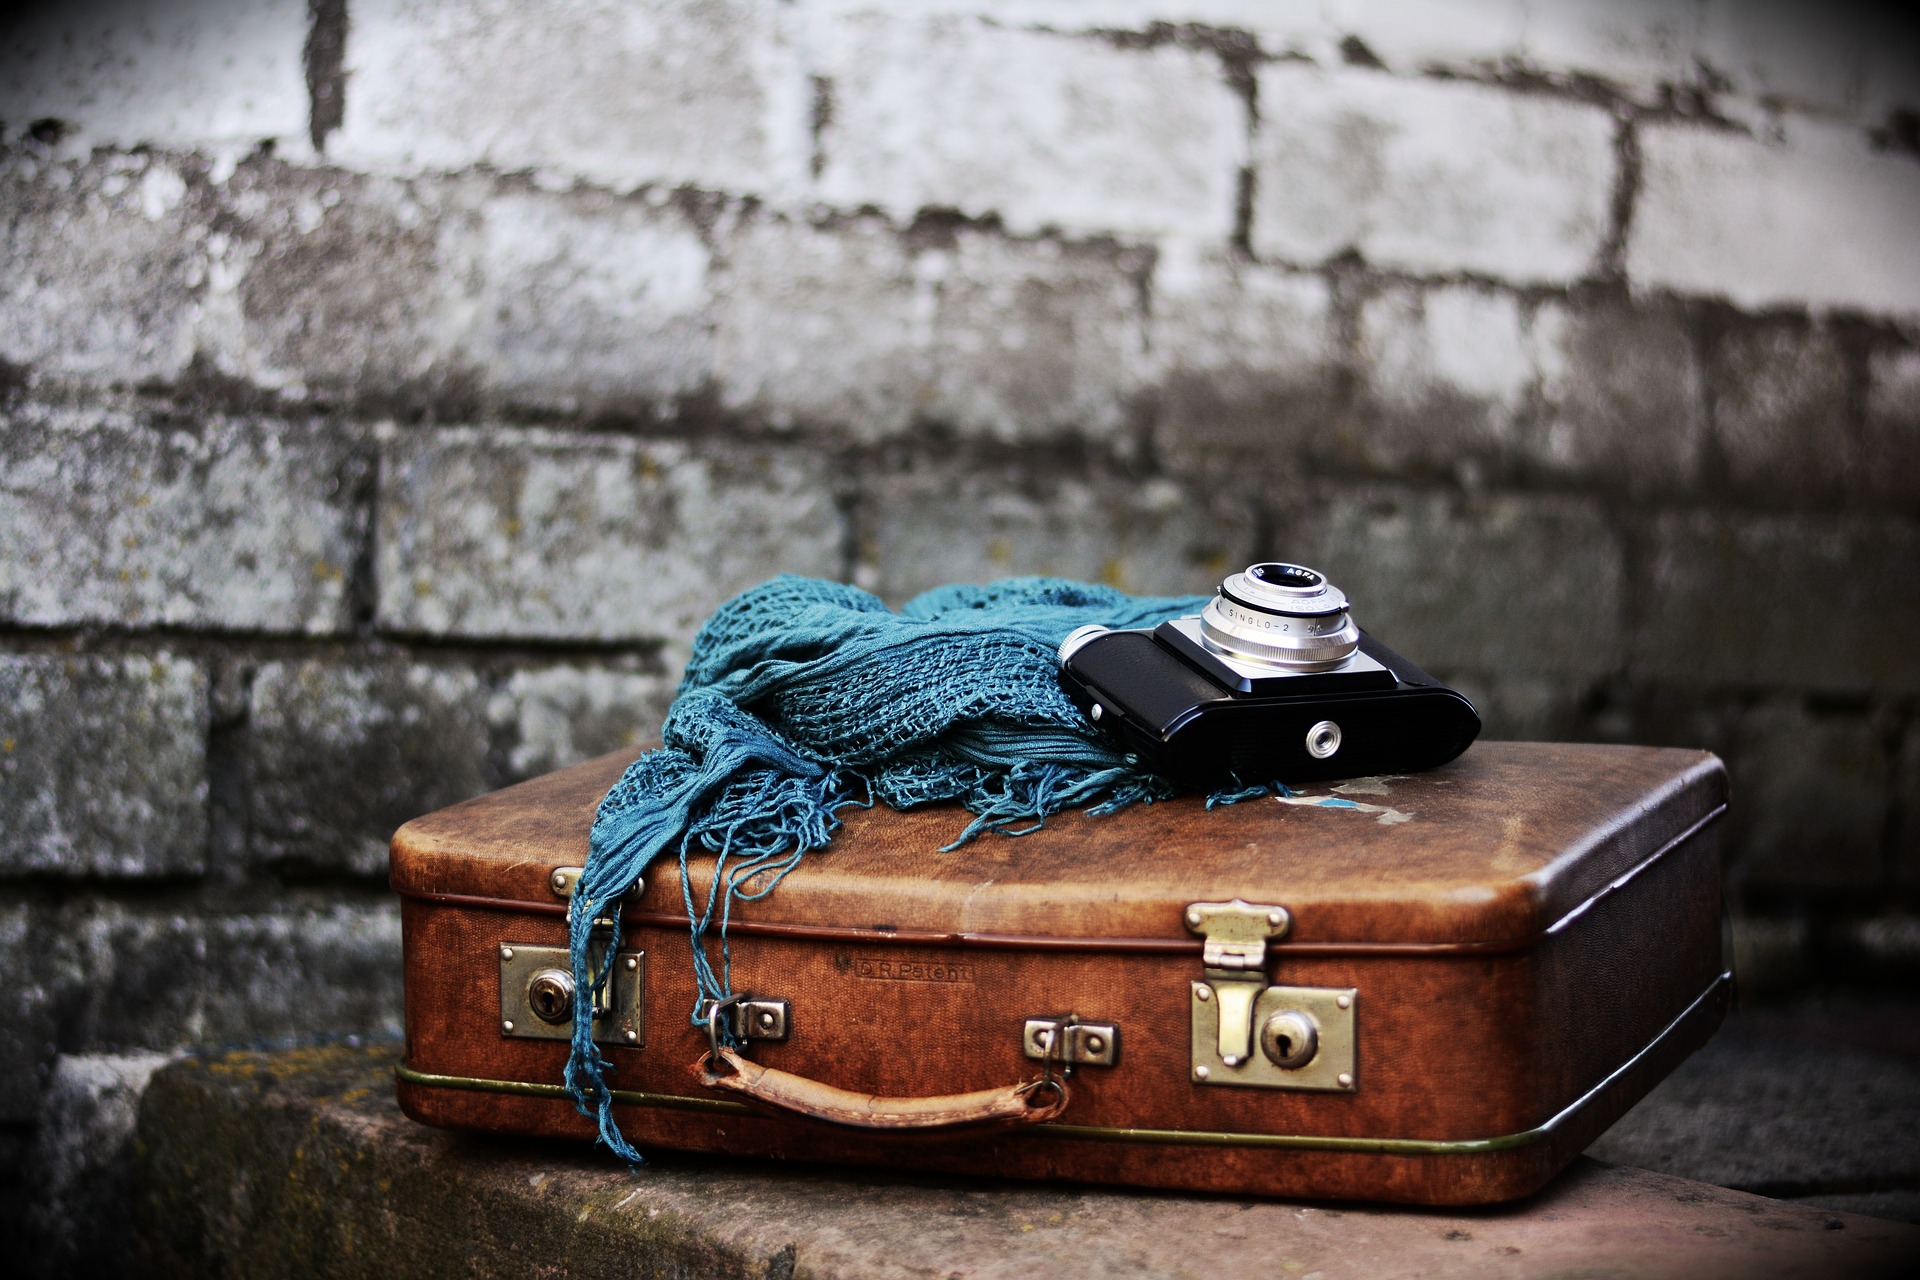 Luggage 2420324 - image by congerdesign @ pixabay.com